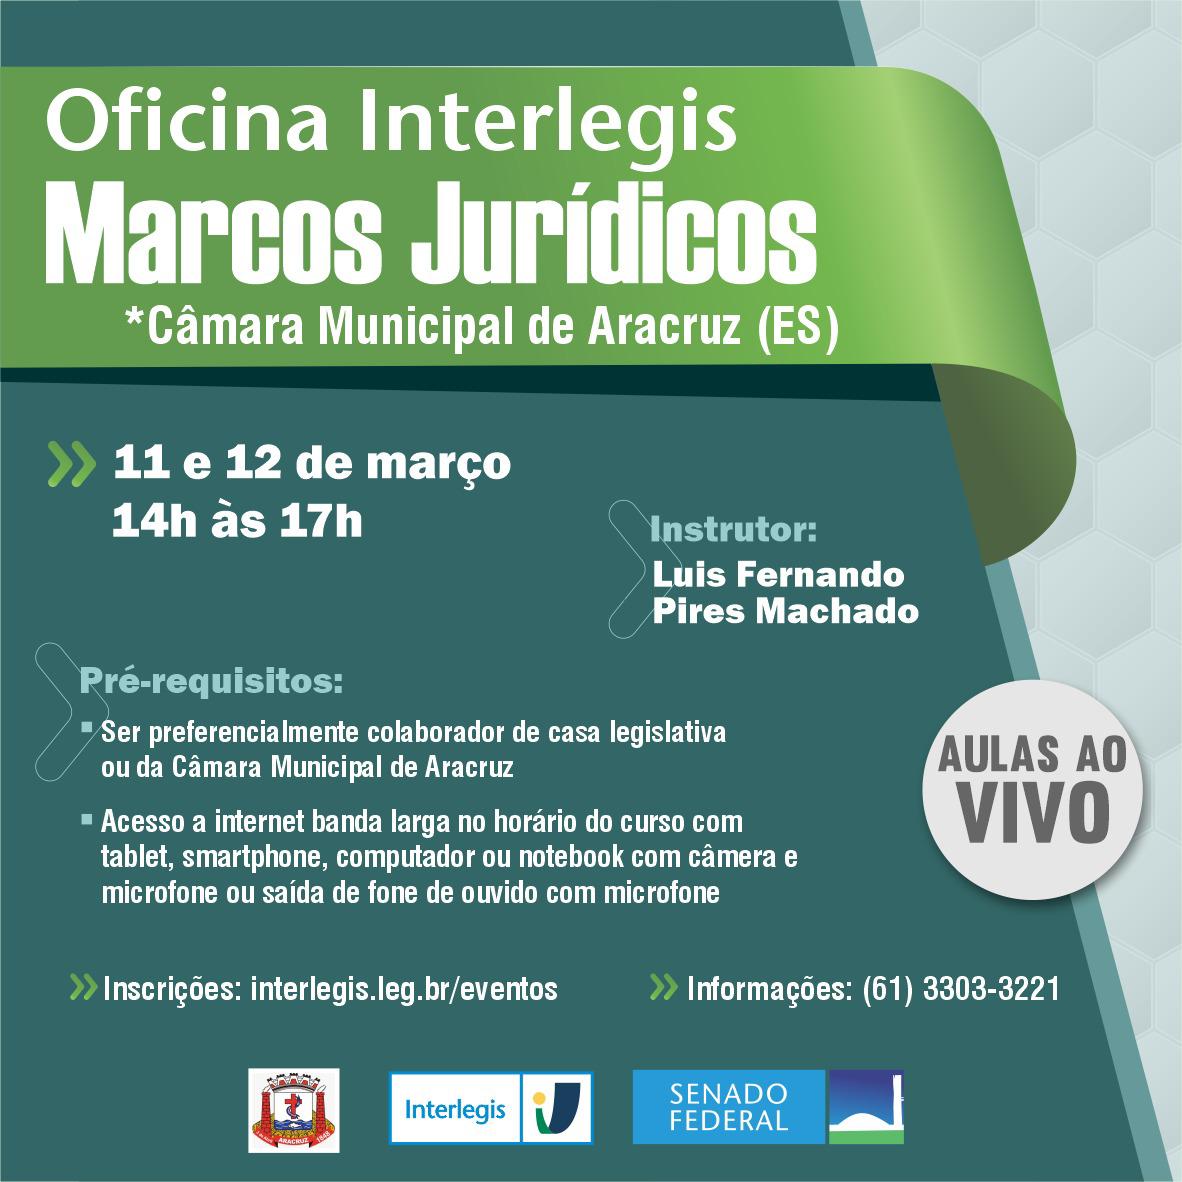 OFICINA INTERLEGIS DE MARCOS JURÍDICOS - CÂMARA MUNICIPAL DE ARACRUZ (ES)